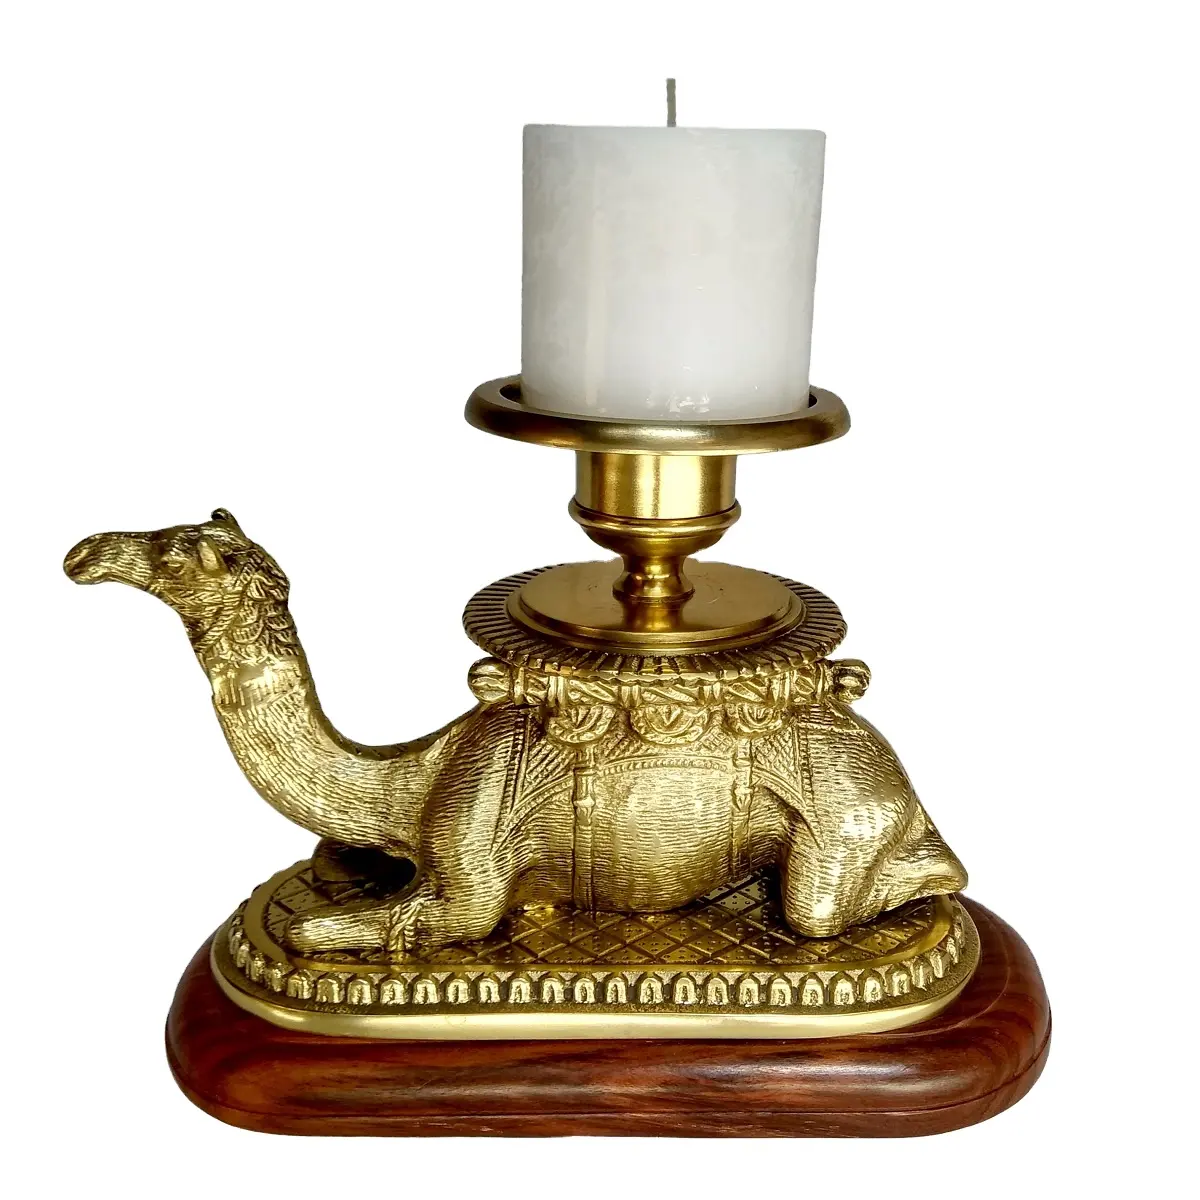 홈 장식 테이블 탑 장식 럭셔리 도매 속도 웨딩 선물 축제에 대 한 낙타 동물 동상에 촛불 스탠드 홀더